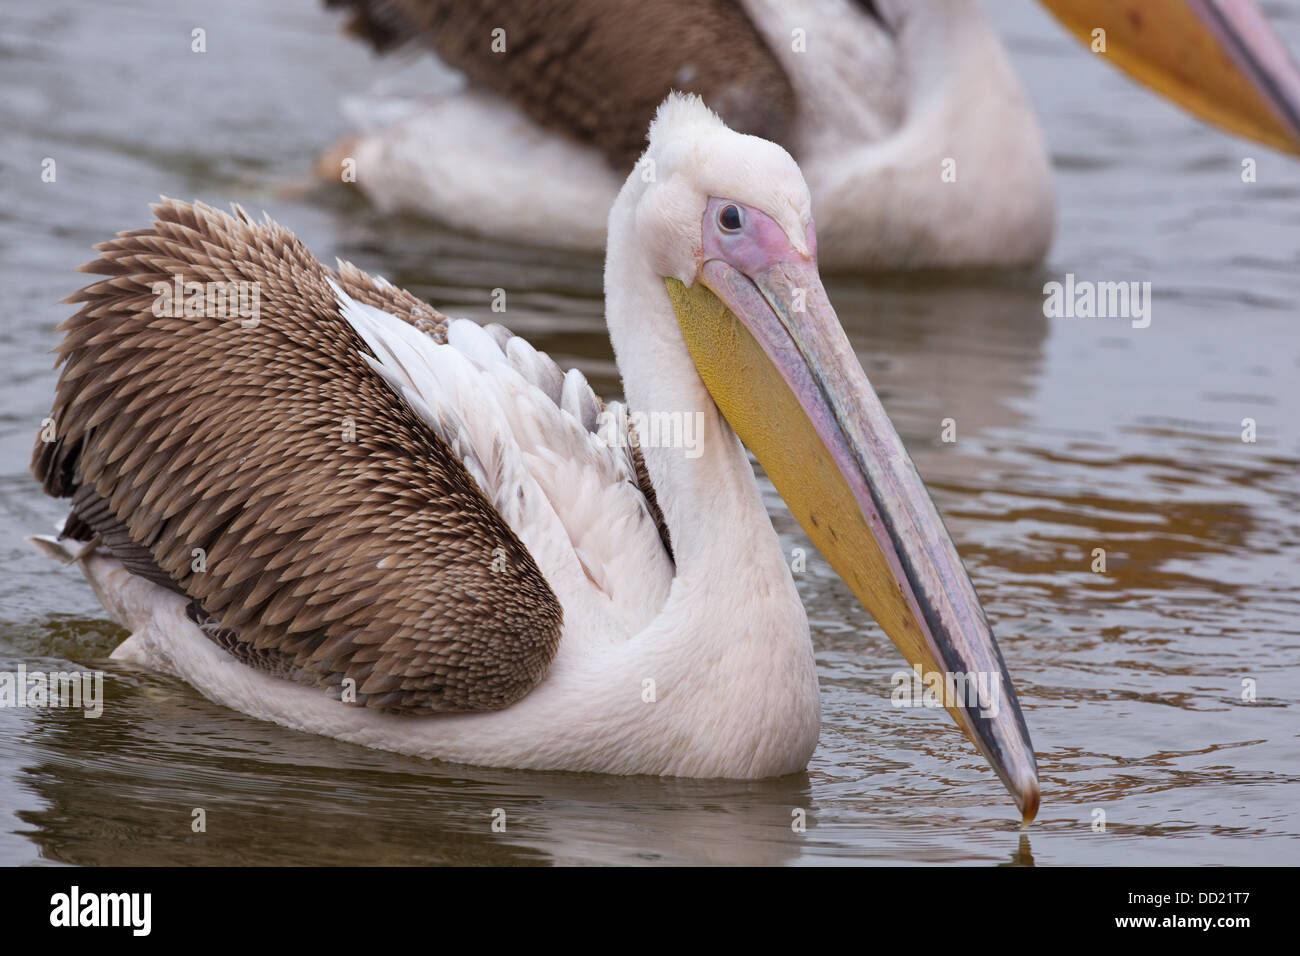 Great White Pelican (Pellicani onocrotalus). Piumaggio immaturi. Foto Stock